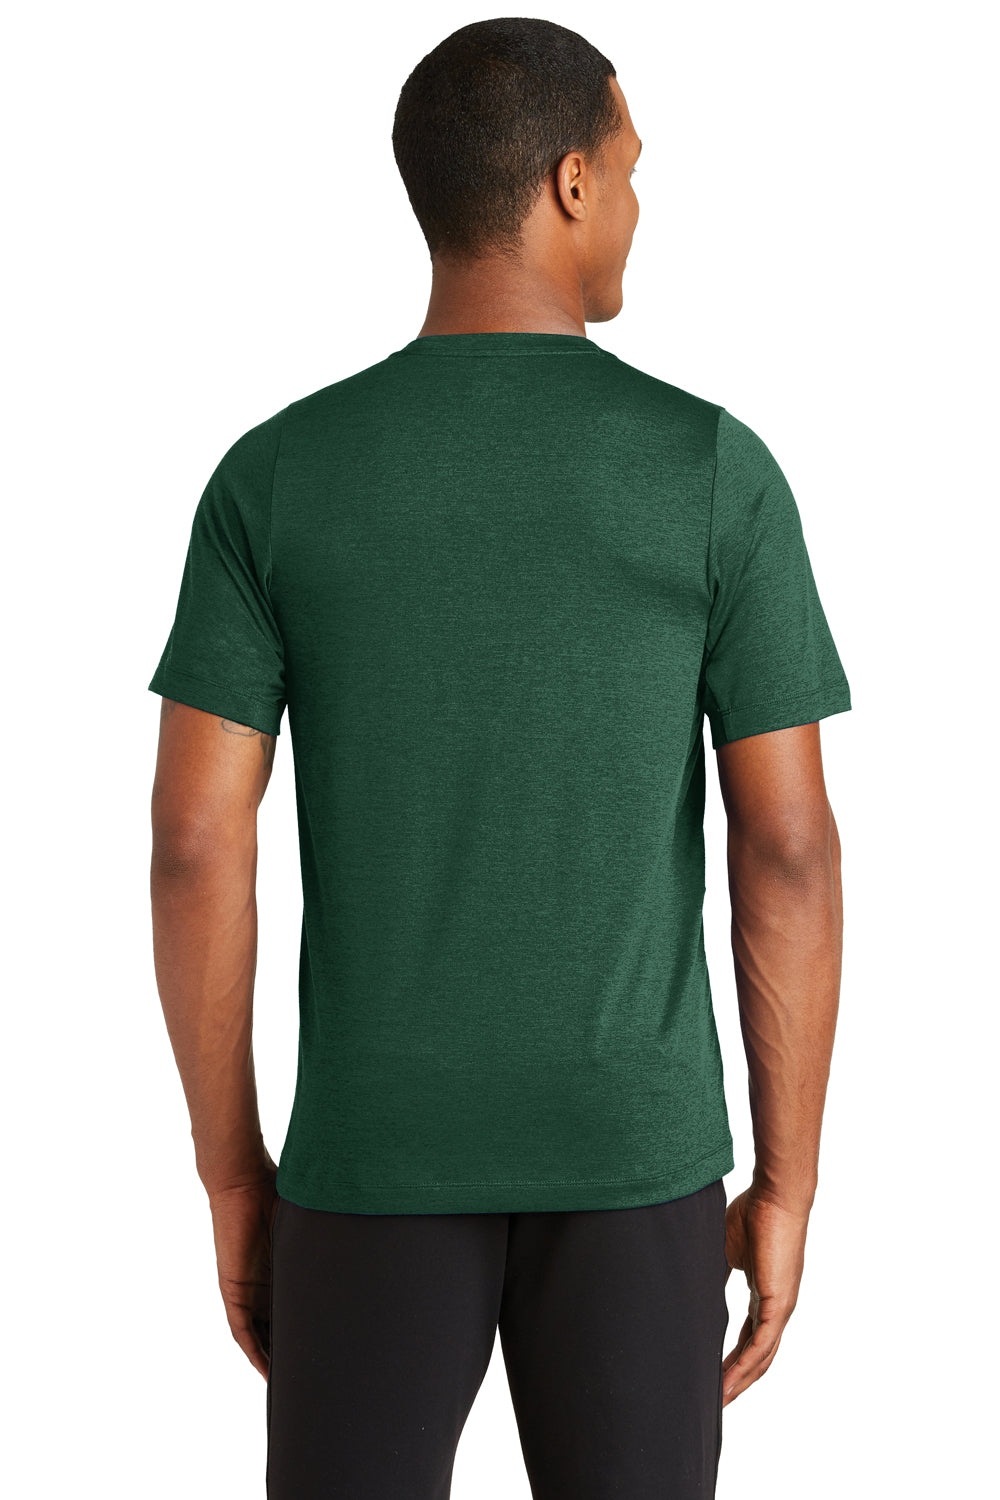 New Era NEA200 Mens Series Performance Jersey Moisture Wicking Short Sleeve Crewneck T-Shirt Forest Green Back